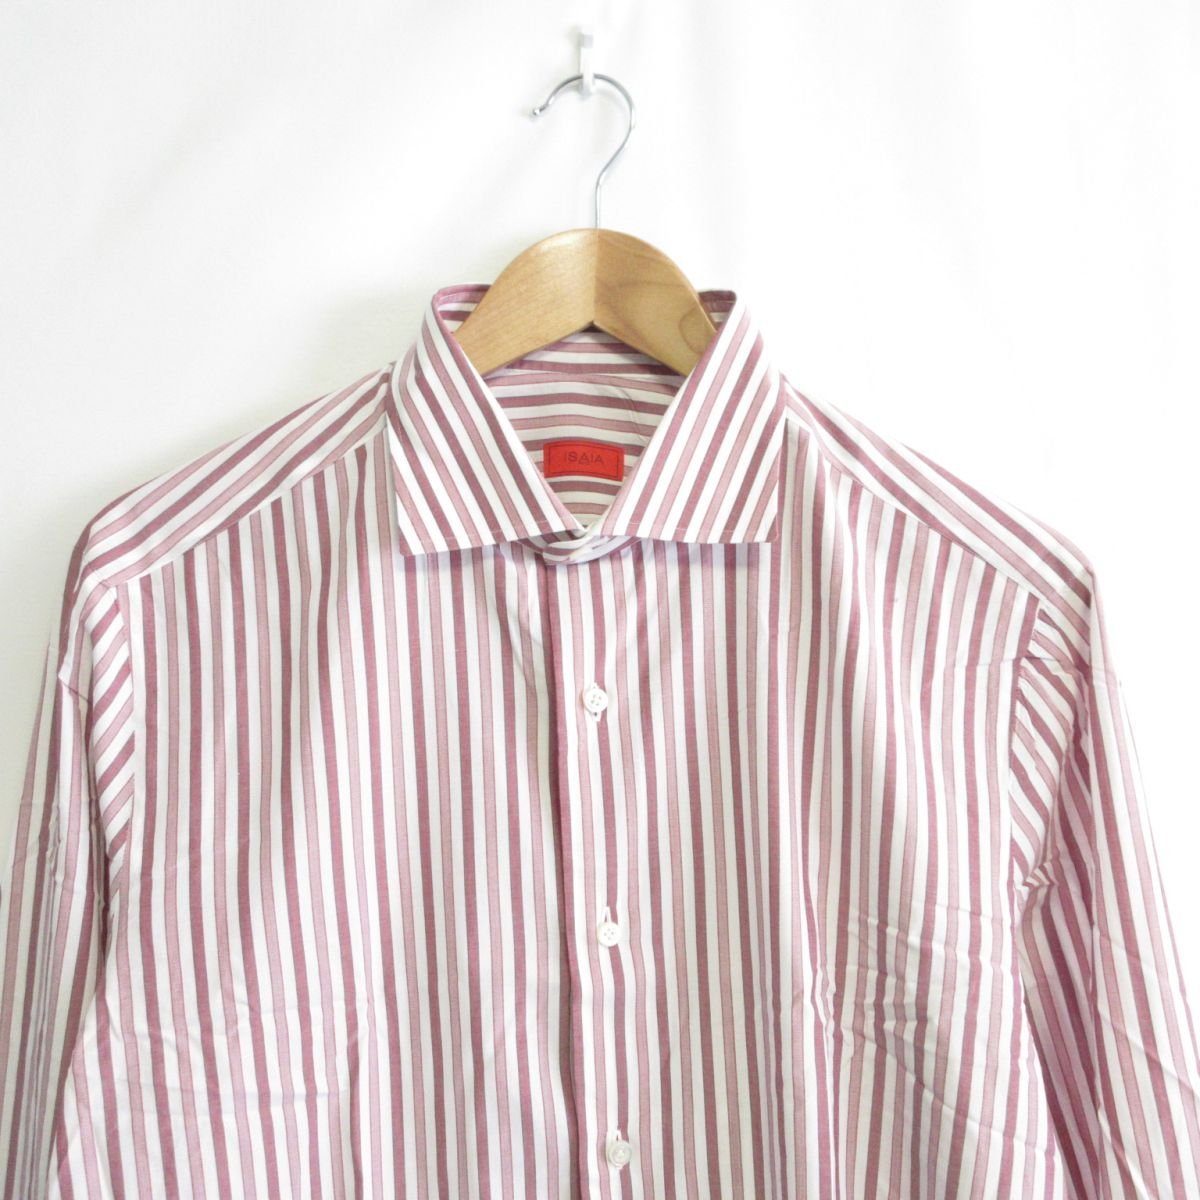 美品 クリーニング済み ISAIA イザイア ストライプ柄 長袖 シャツ ワイシャツ 16 1/2 42 ホワイト×レッド 白 赤_画像4